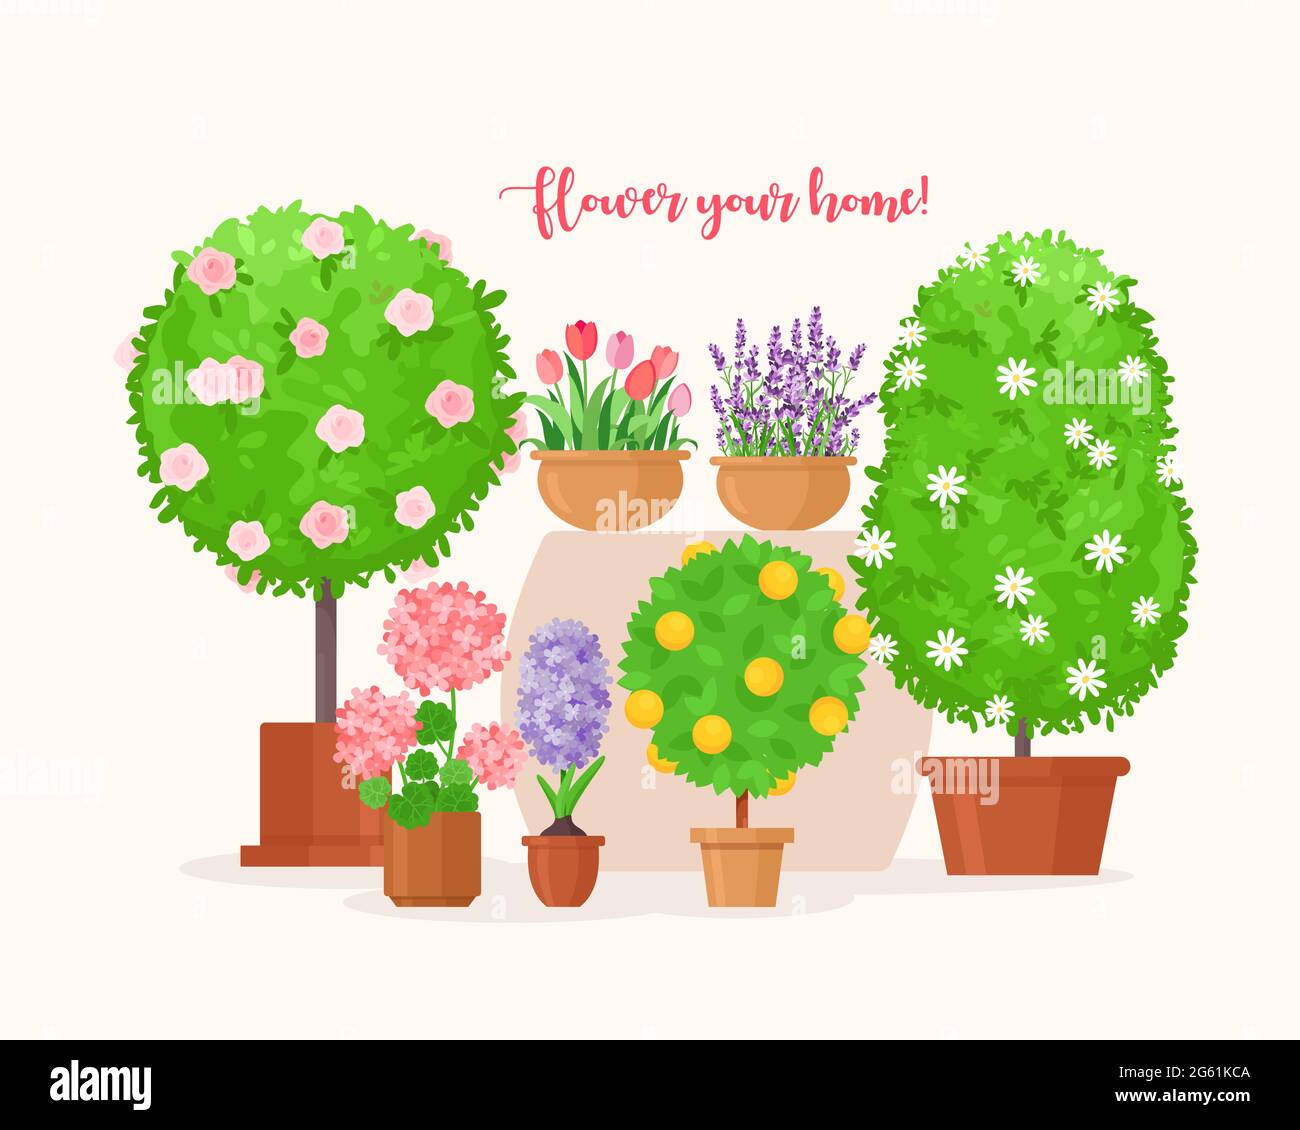 Home Garten Vektor Illustration, Cartoon flach grünen tropischen Obstbaum und Bio-Hauspflanze in Topf, Lavendel oder Tulpe Blume für Balkon isoliert Stock Vektor